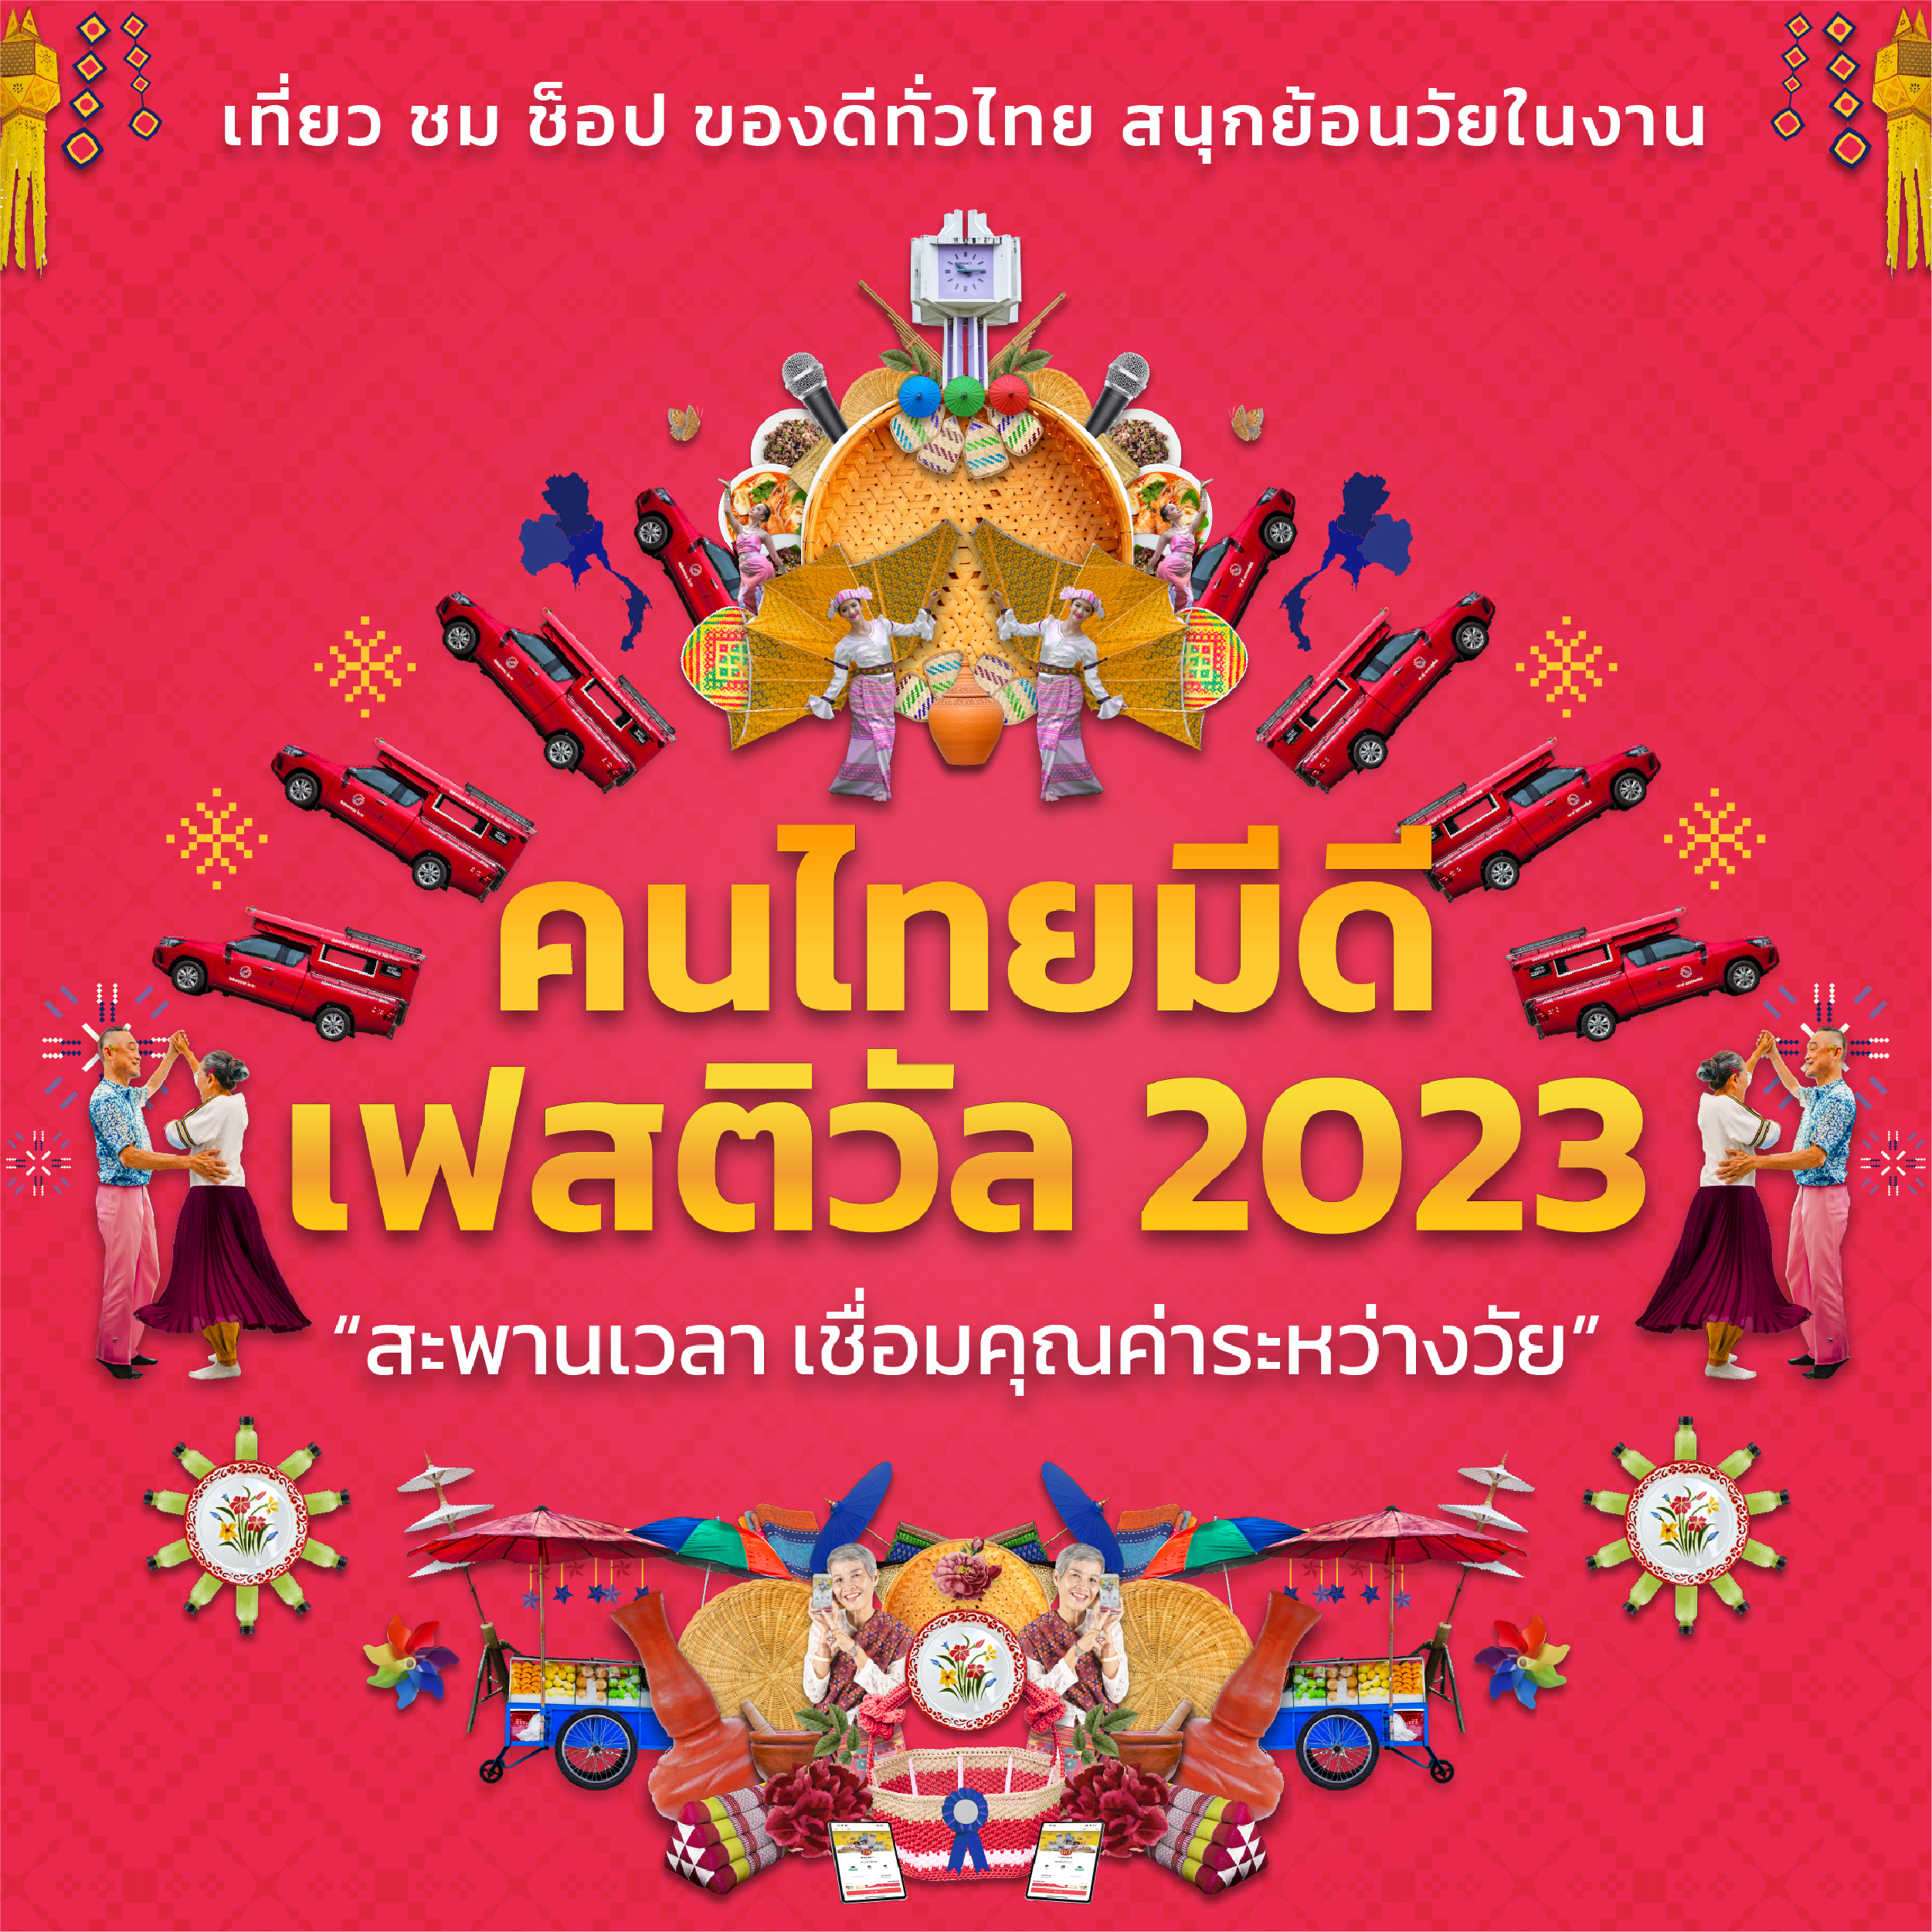 กิจกรรมคนไทยมีดี เฟสติวัล 2023 “สะพานเวลา เชื่อมคุณค่าระหว่างวัย”